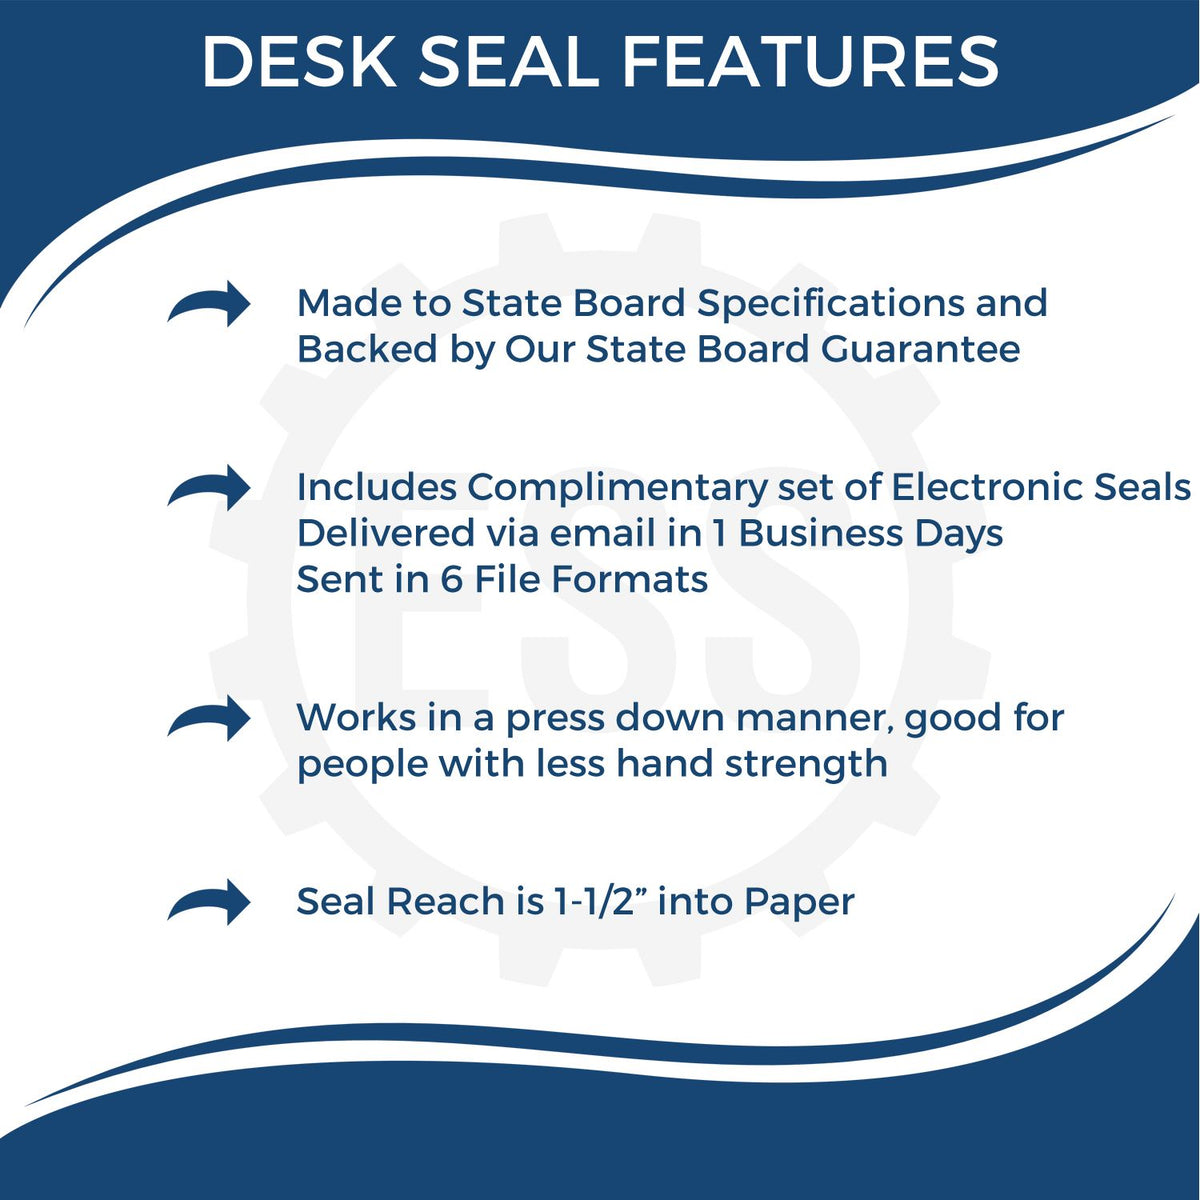 West Virginia Engineer Desk Seal